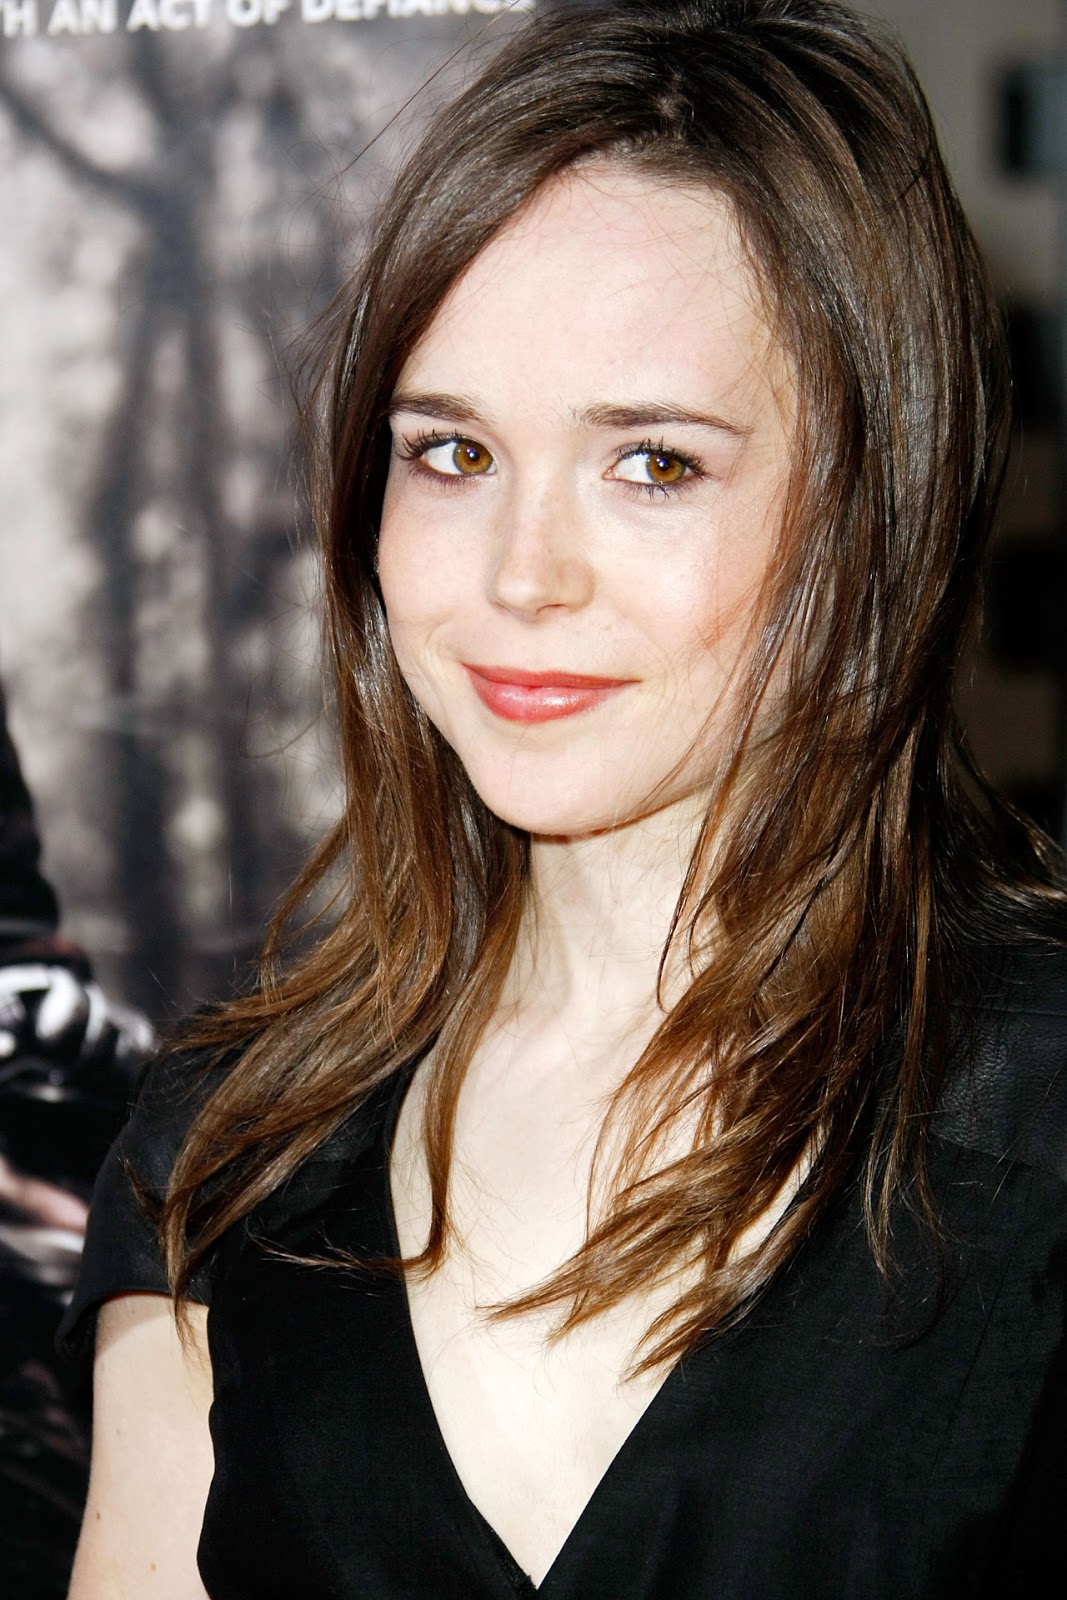 Ellen Page - Ellen Page Photos, Wallpapers | Fun Maza New